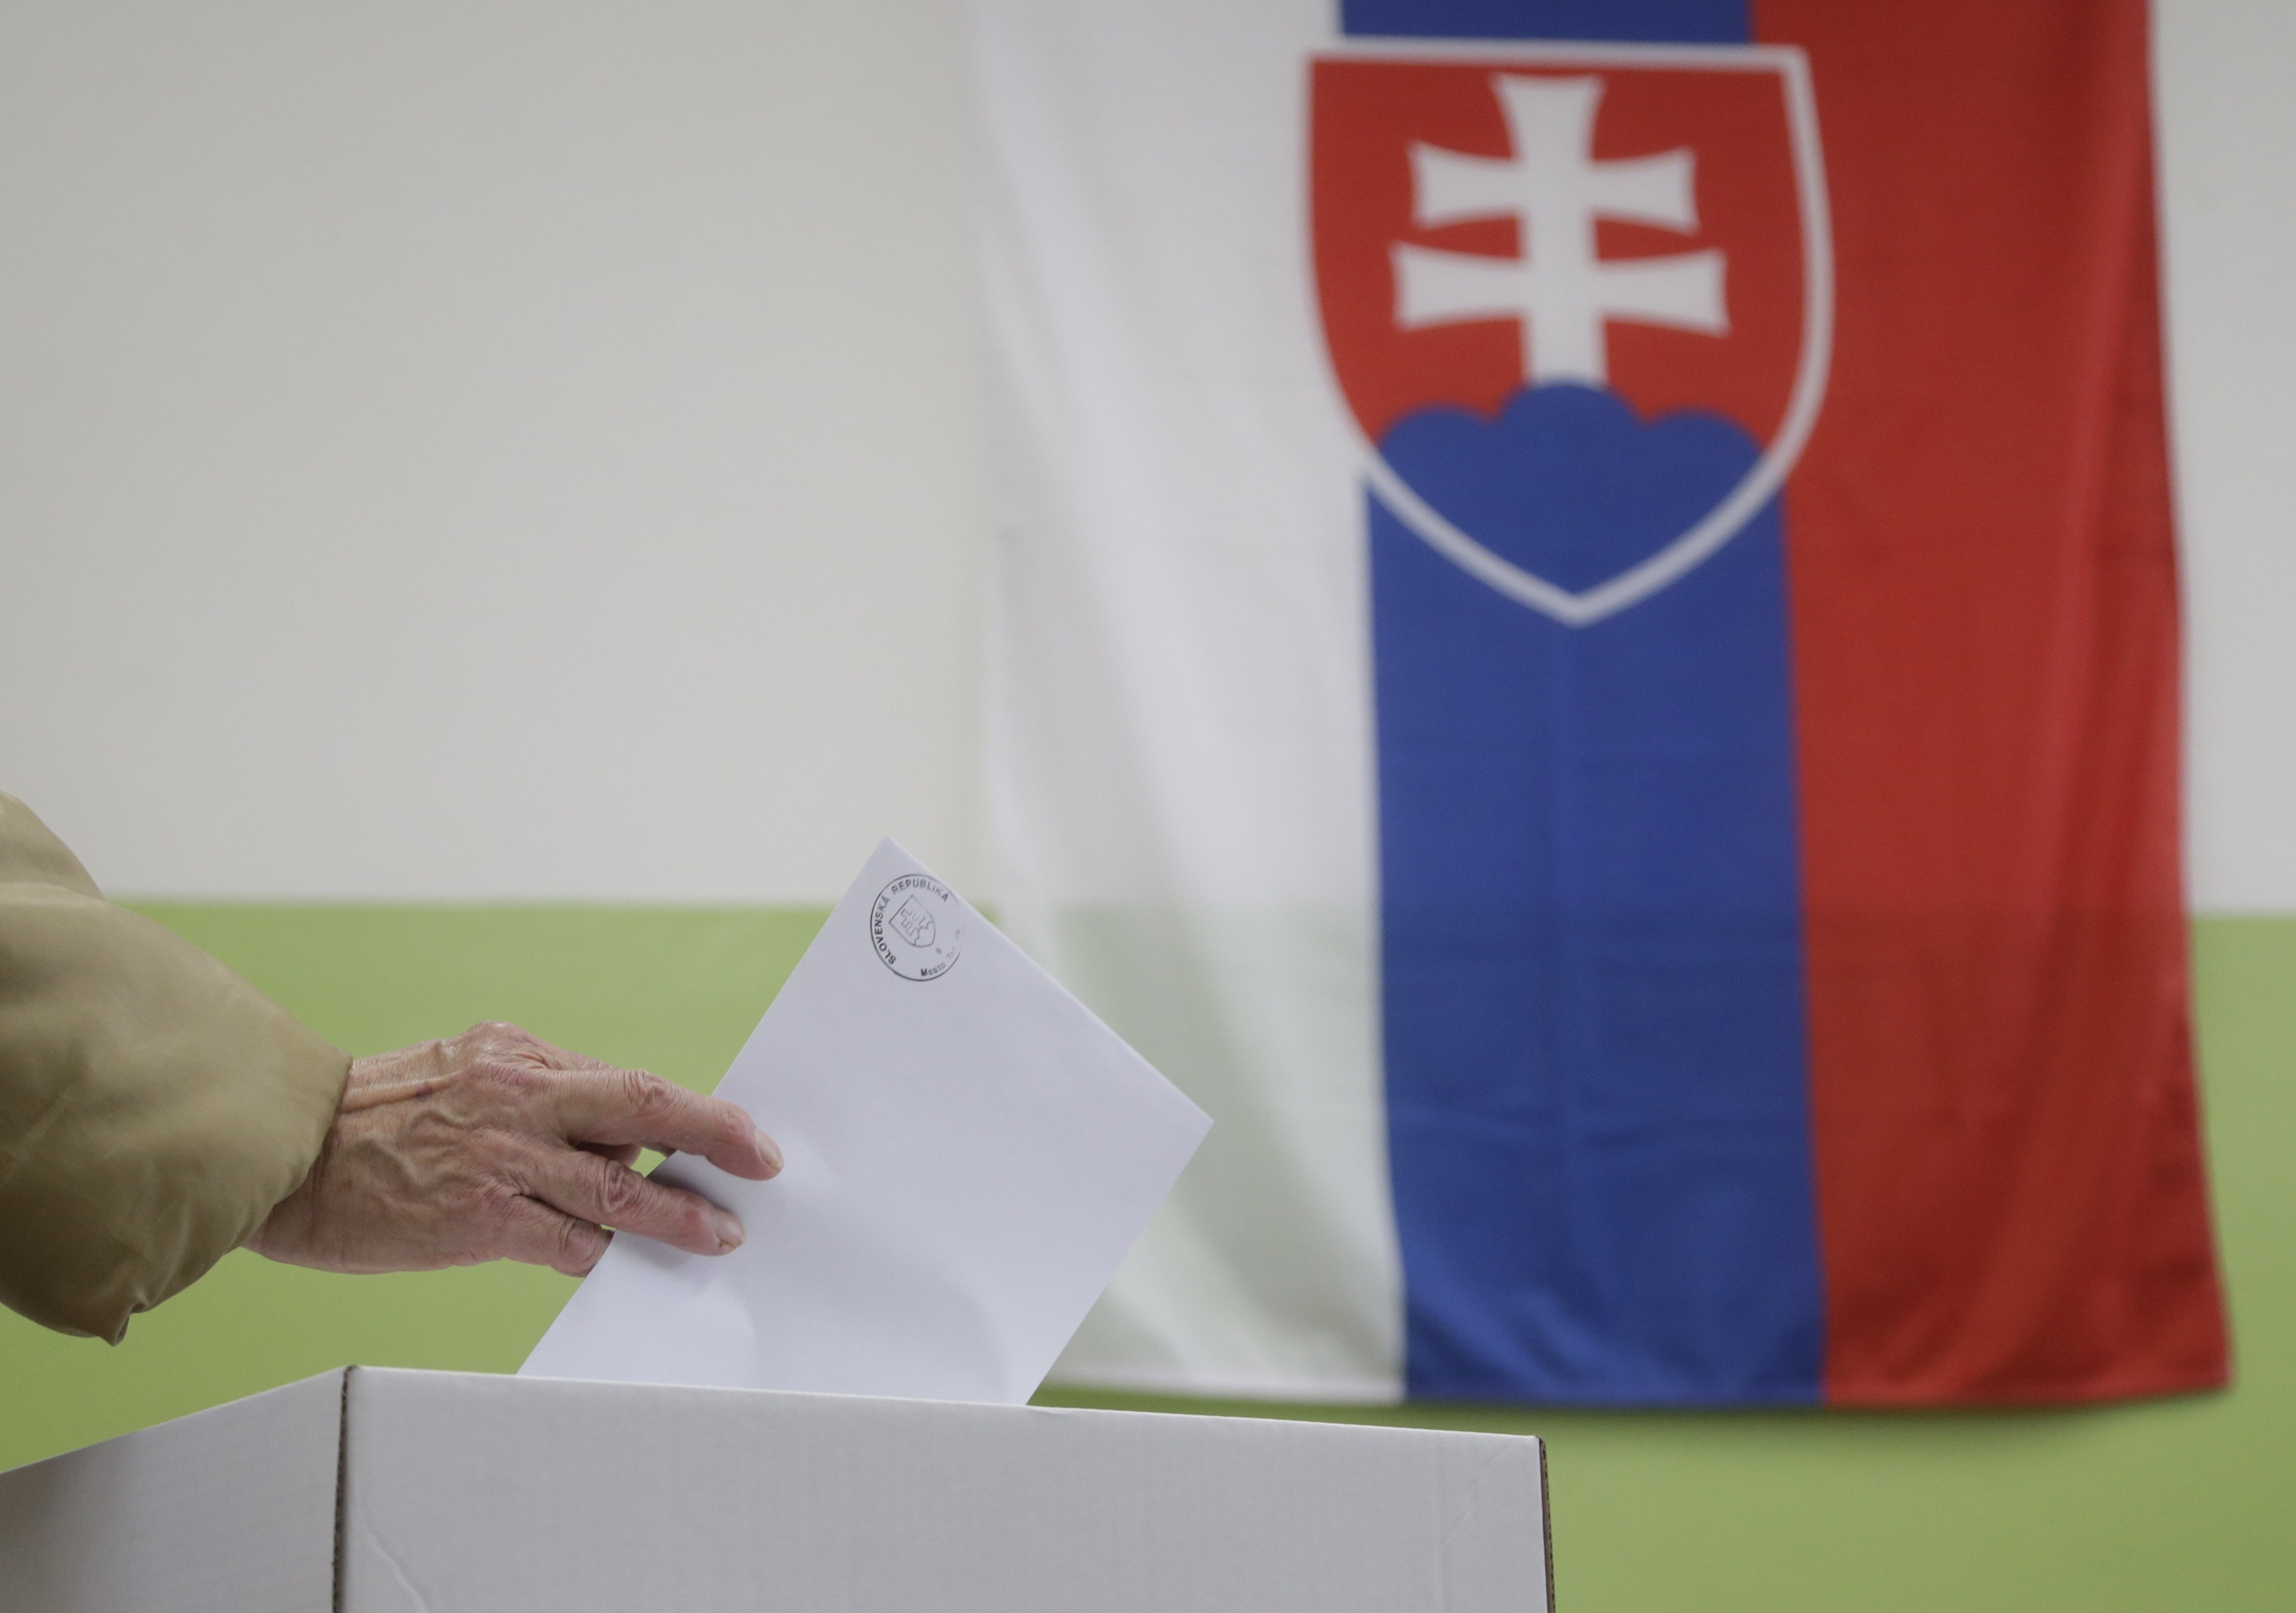 Σλοβακία -Εκλογές:  Ανοδος της ακροδεξιάς και απώλεια πλειοψηφίας για τον πρωθυπουργό που ακολούθησε αντιμεταναστευτική γραμμή